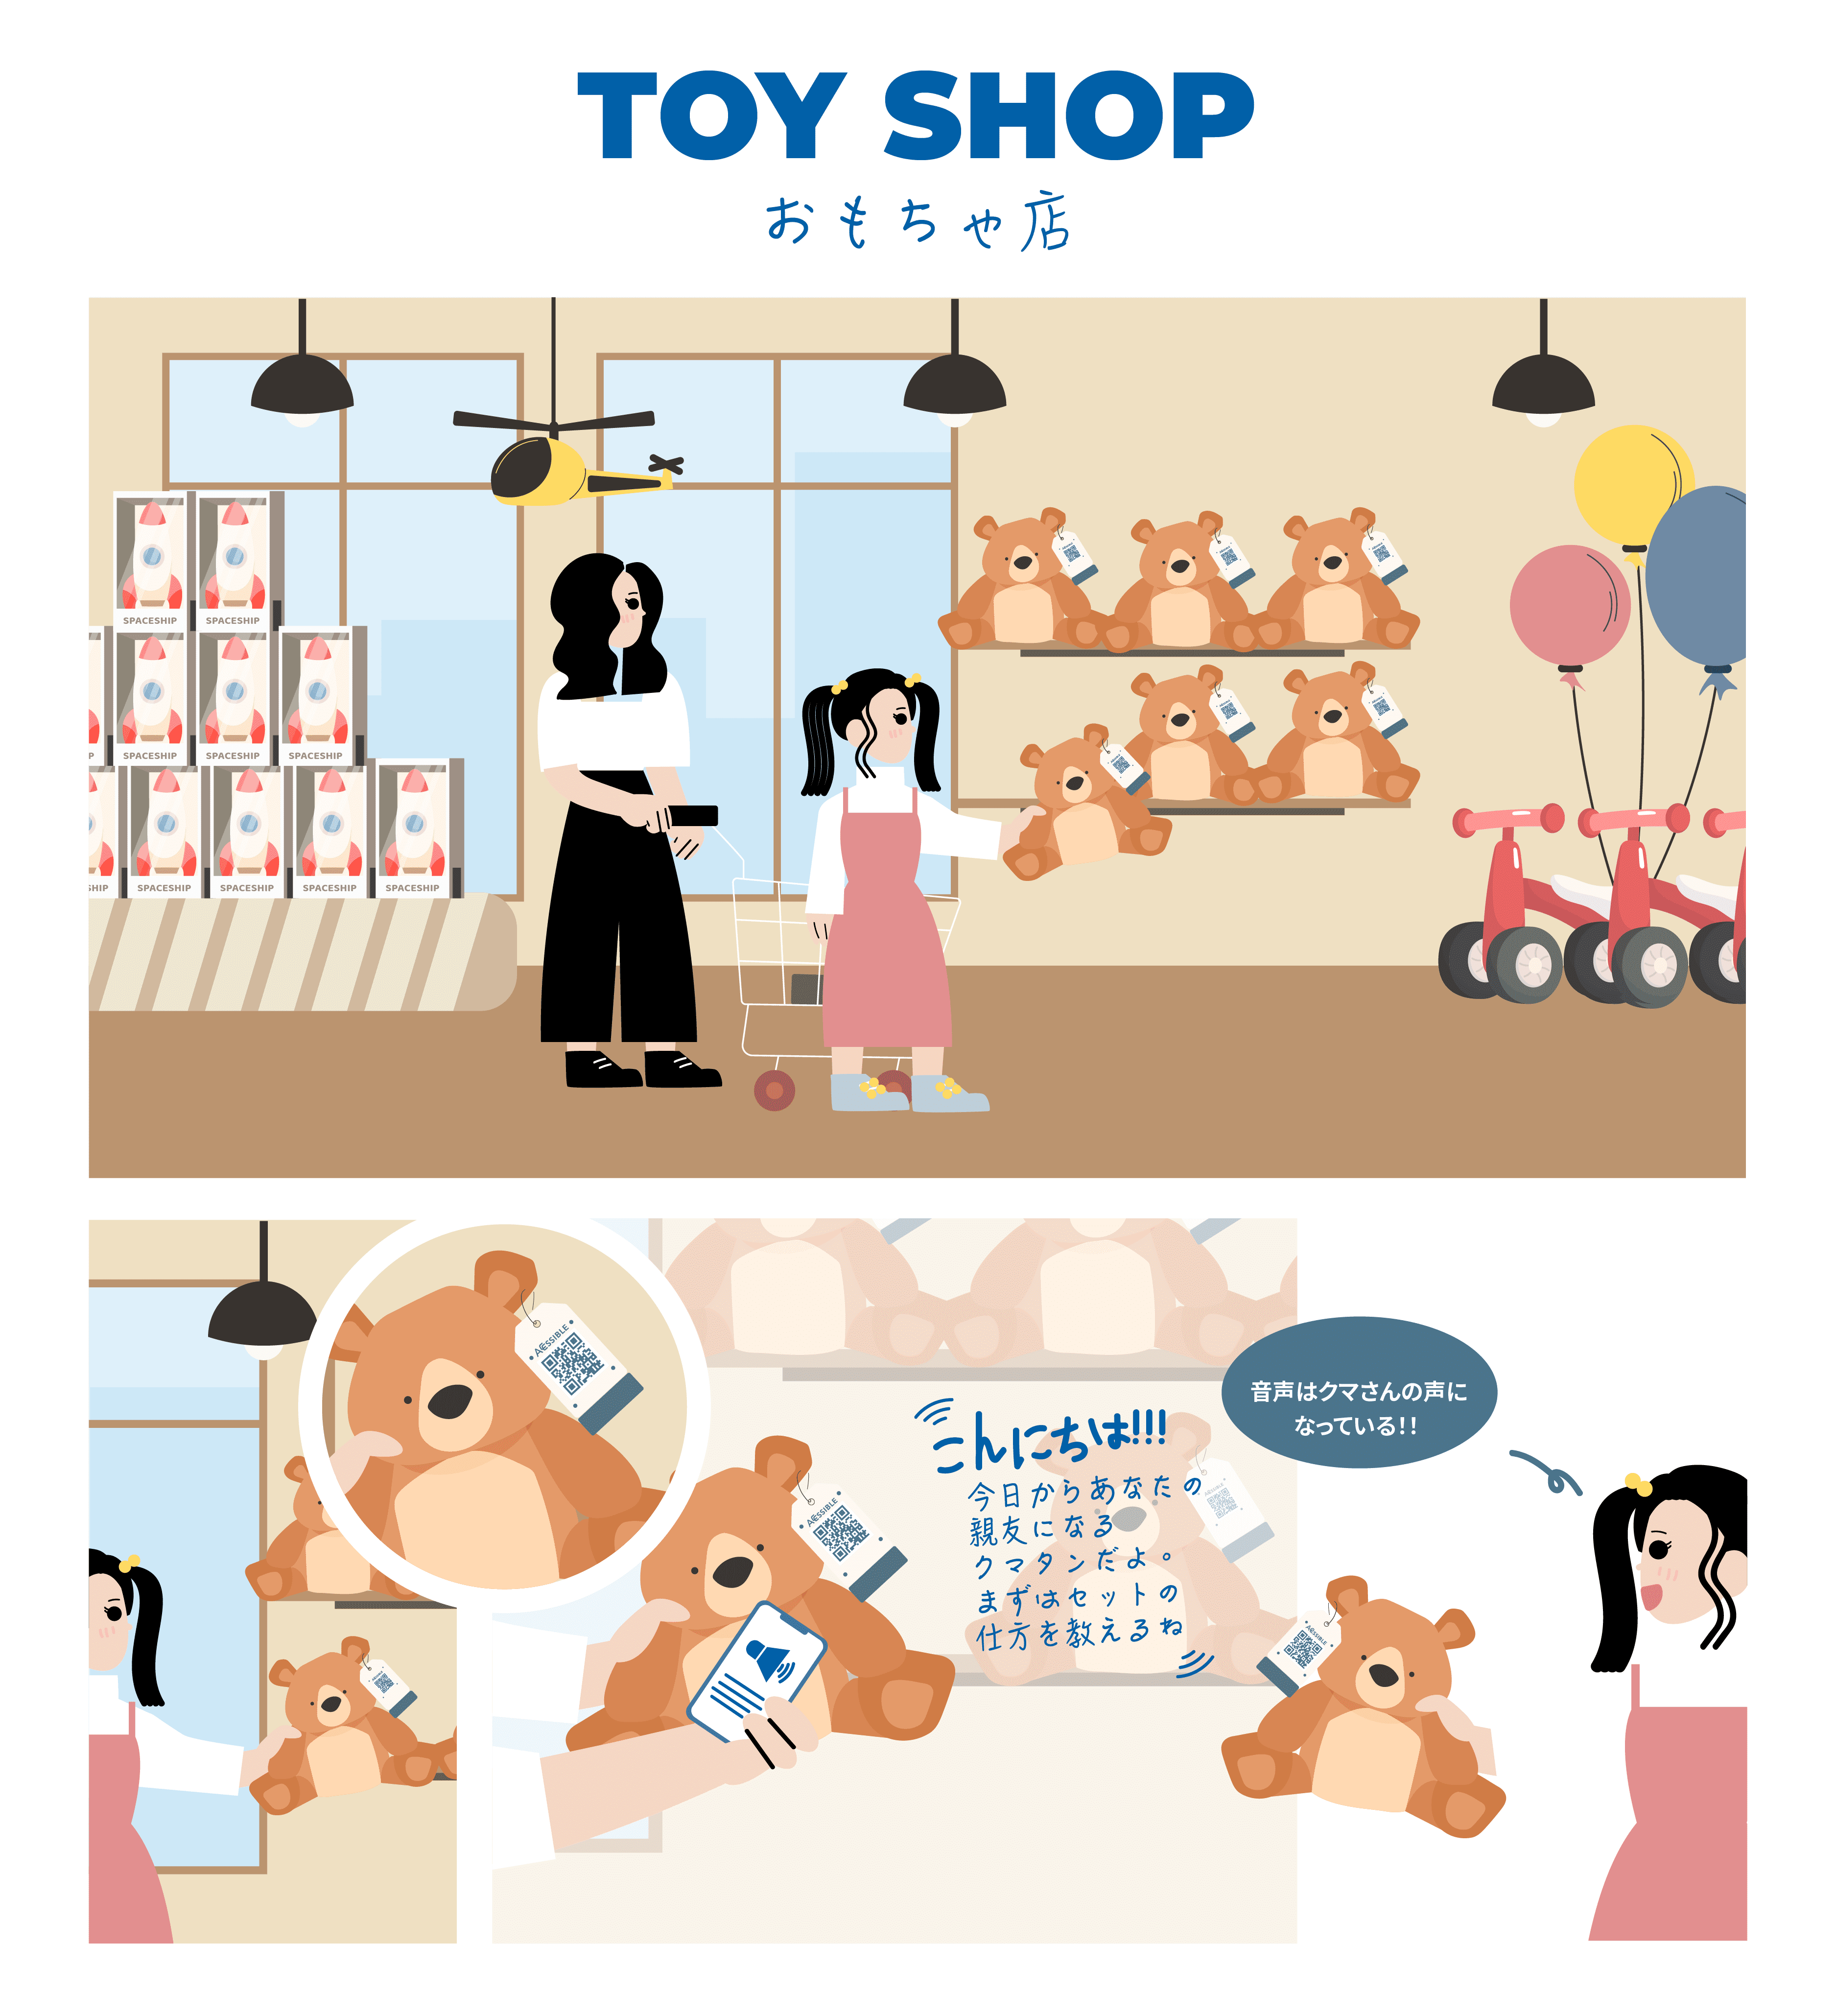 おもちゃ売り場で子どもがぬいぐるみを手に取り、タブについているアクセシブルコードを読み取り音声をきいている画像